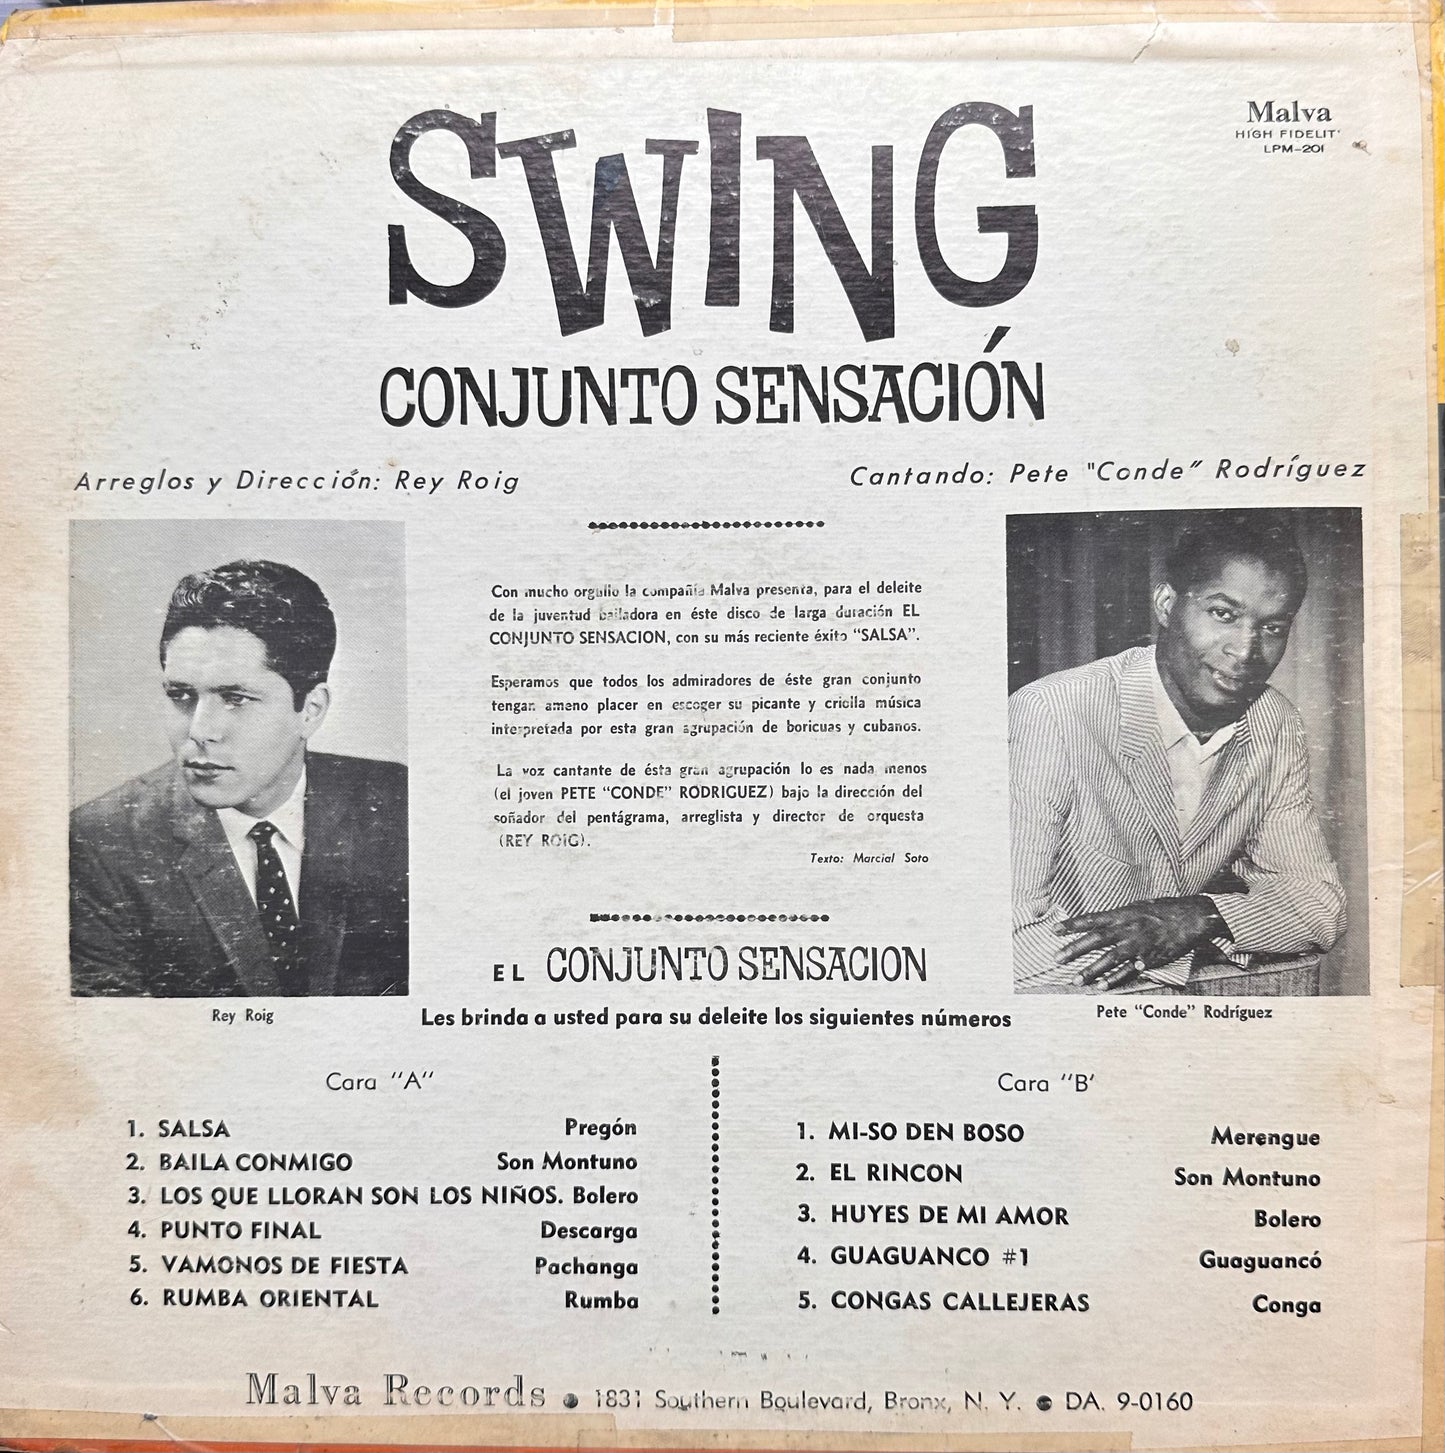 Swing - Conjunto Sensacion